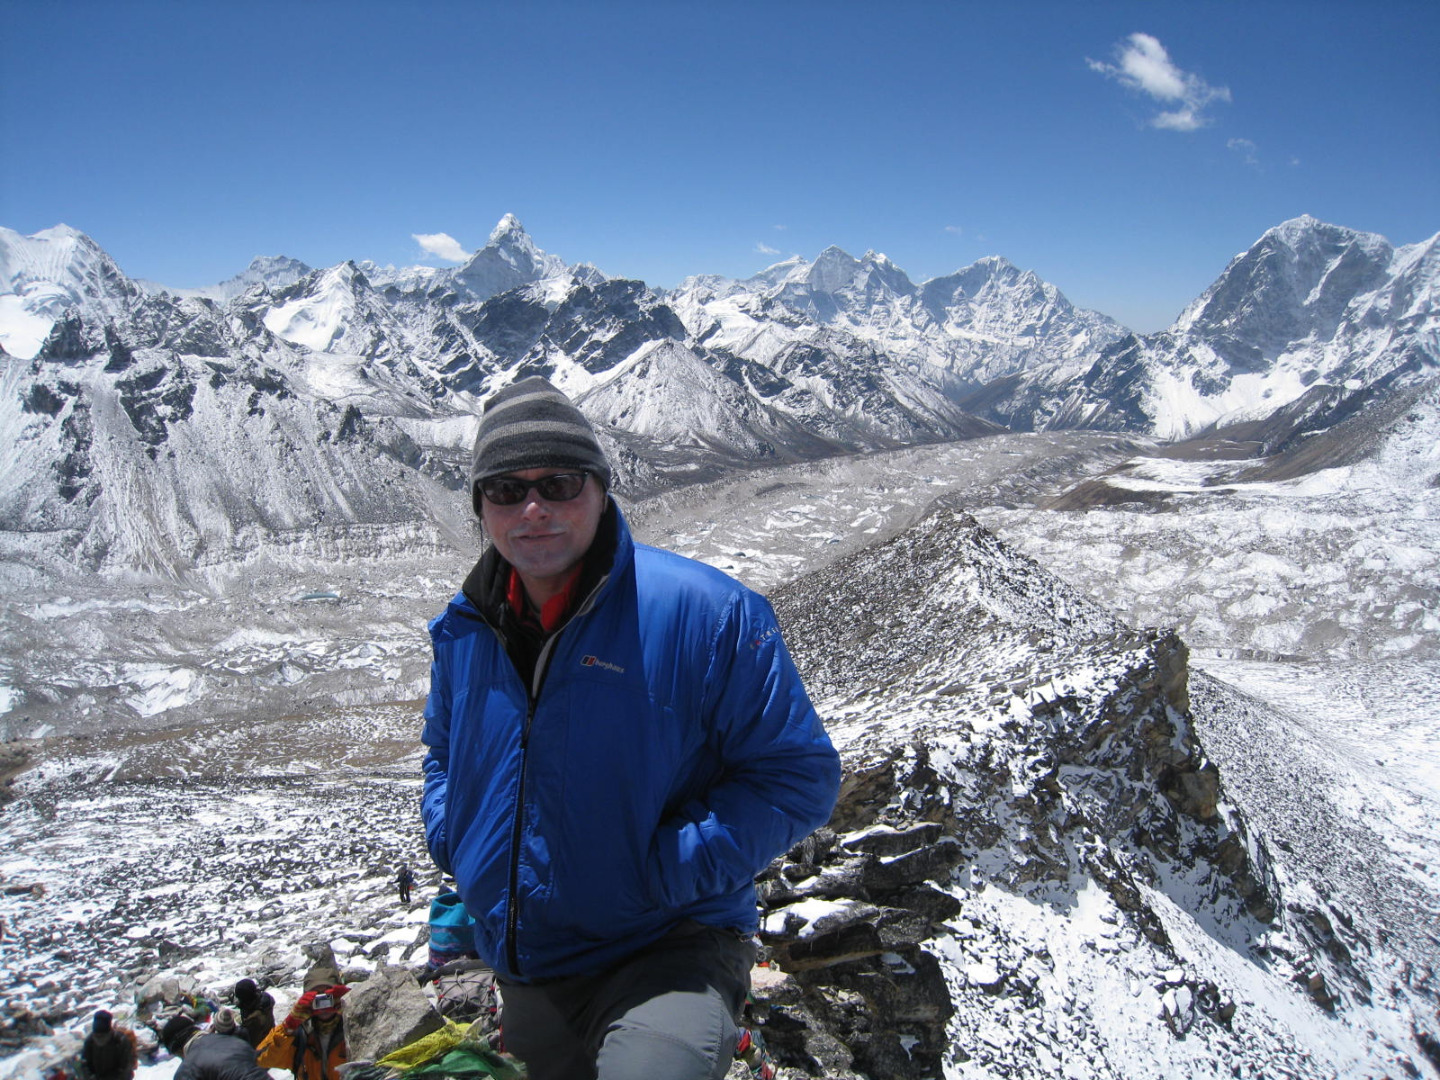 Dementia Australia Mount Everest Base Camp Trek 2020/21 | Adventure